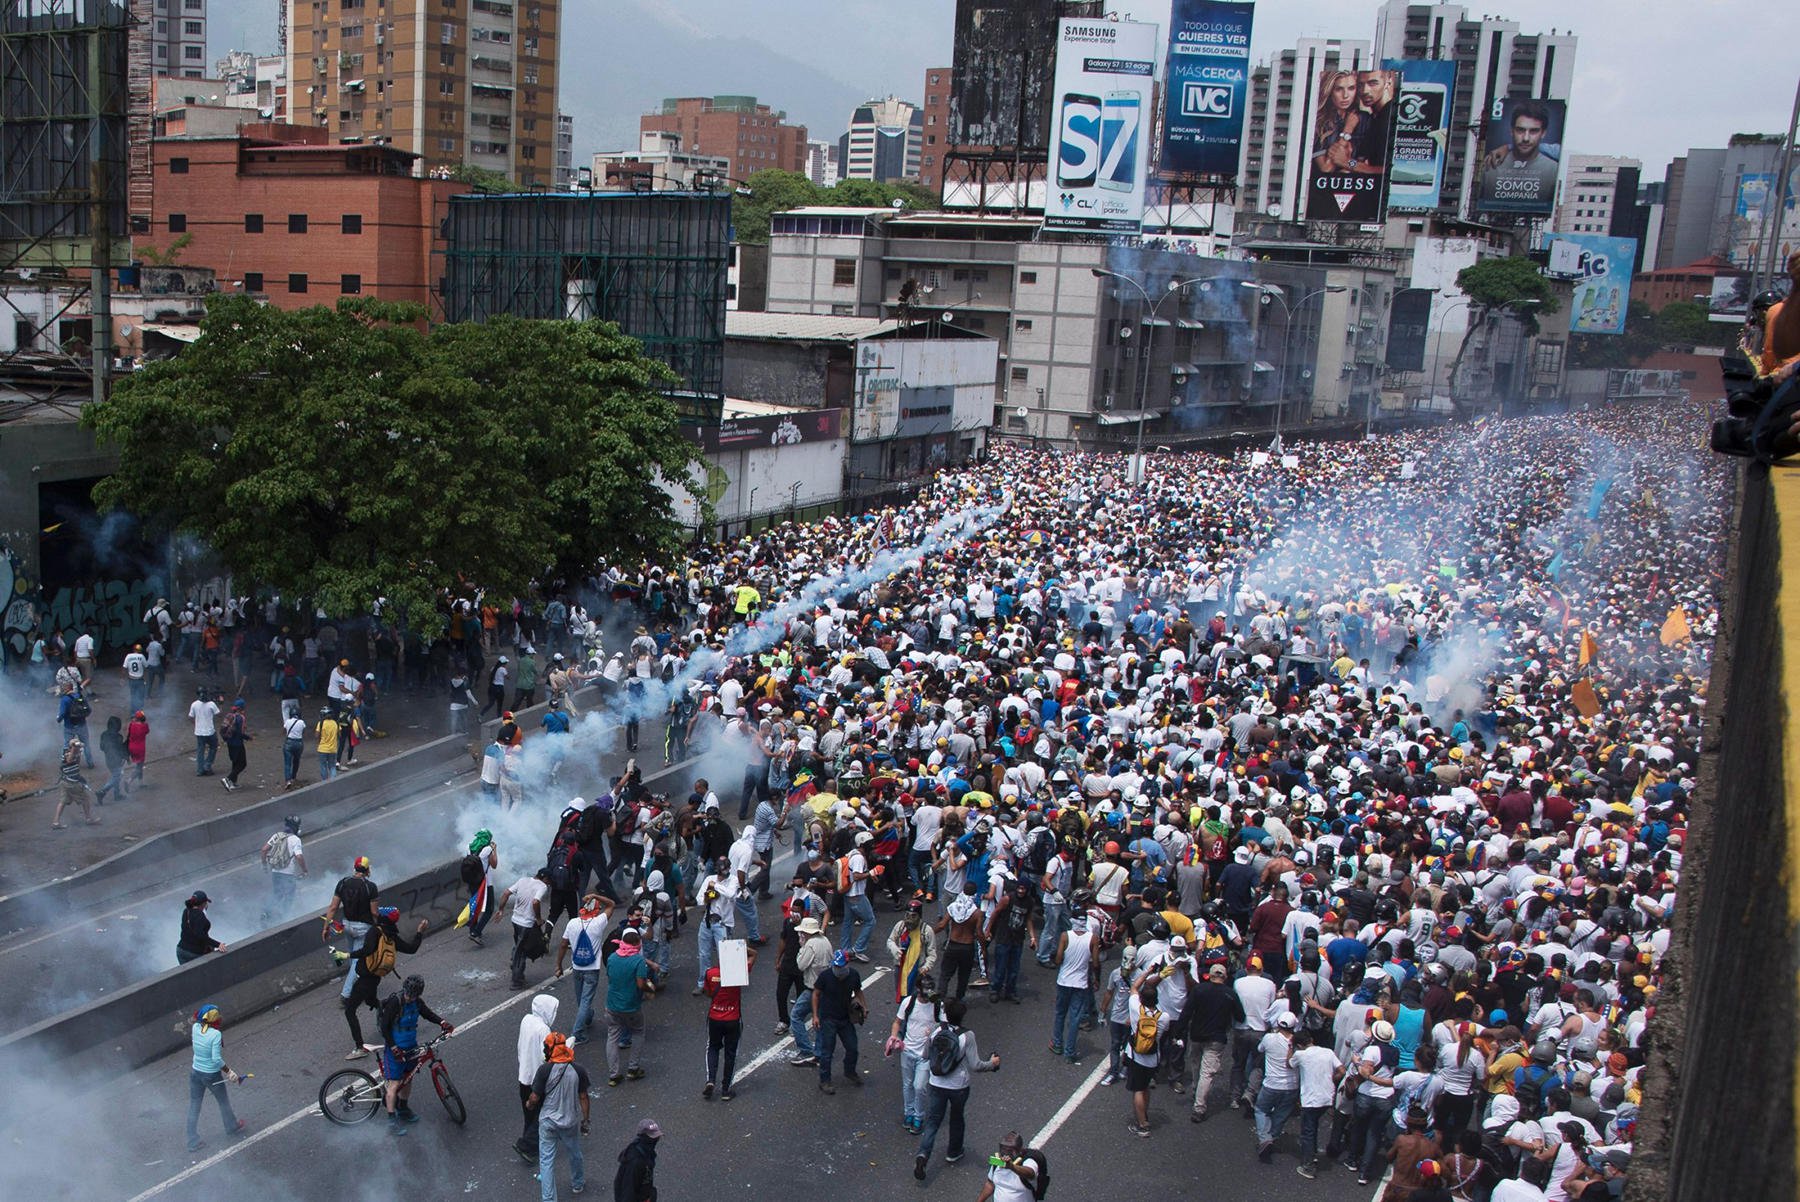 Протести у Венесуелі: кількість загиблих зросла до 35